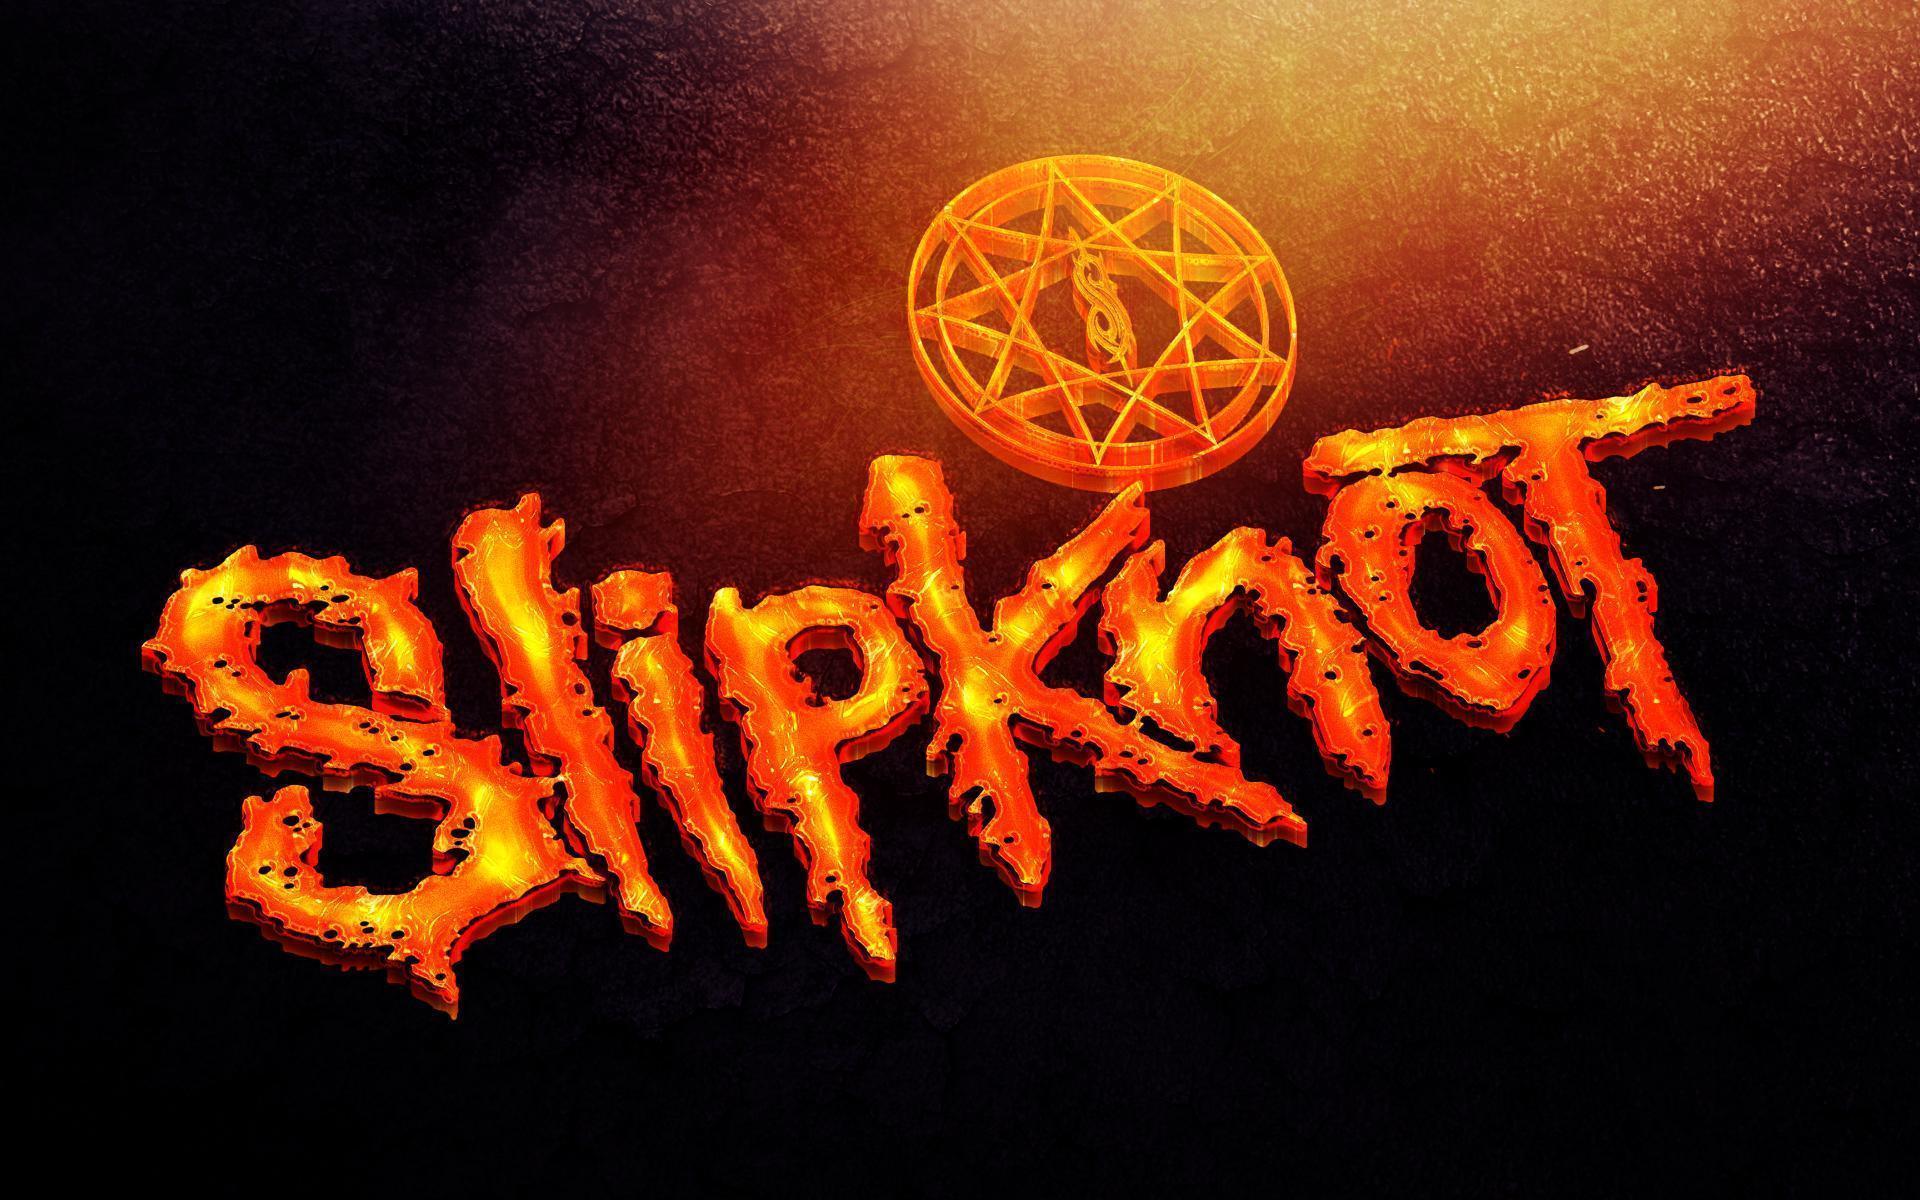 Slipknot logo by croatian